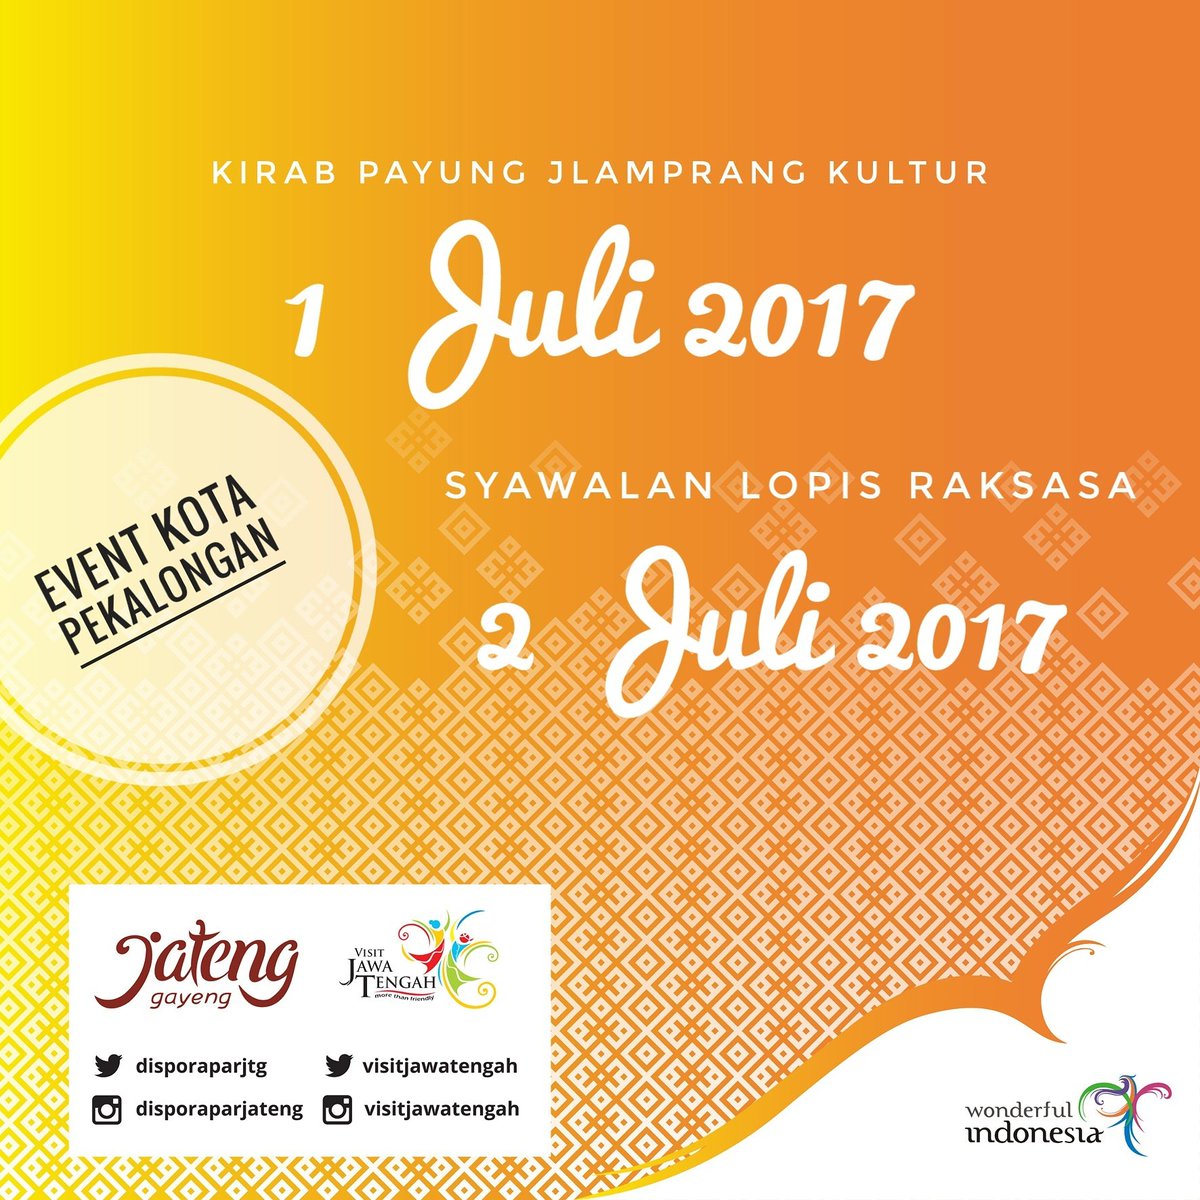 acara Kirab Payung Jlampang Kultur dan Syawalan Lopis Raksasa.